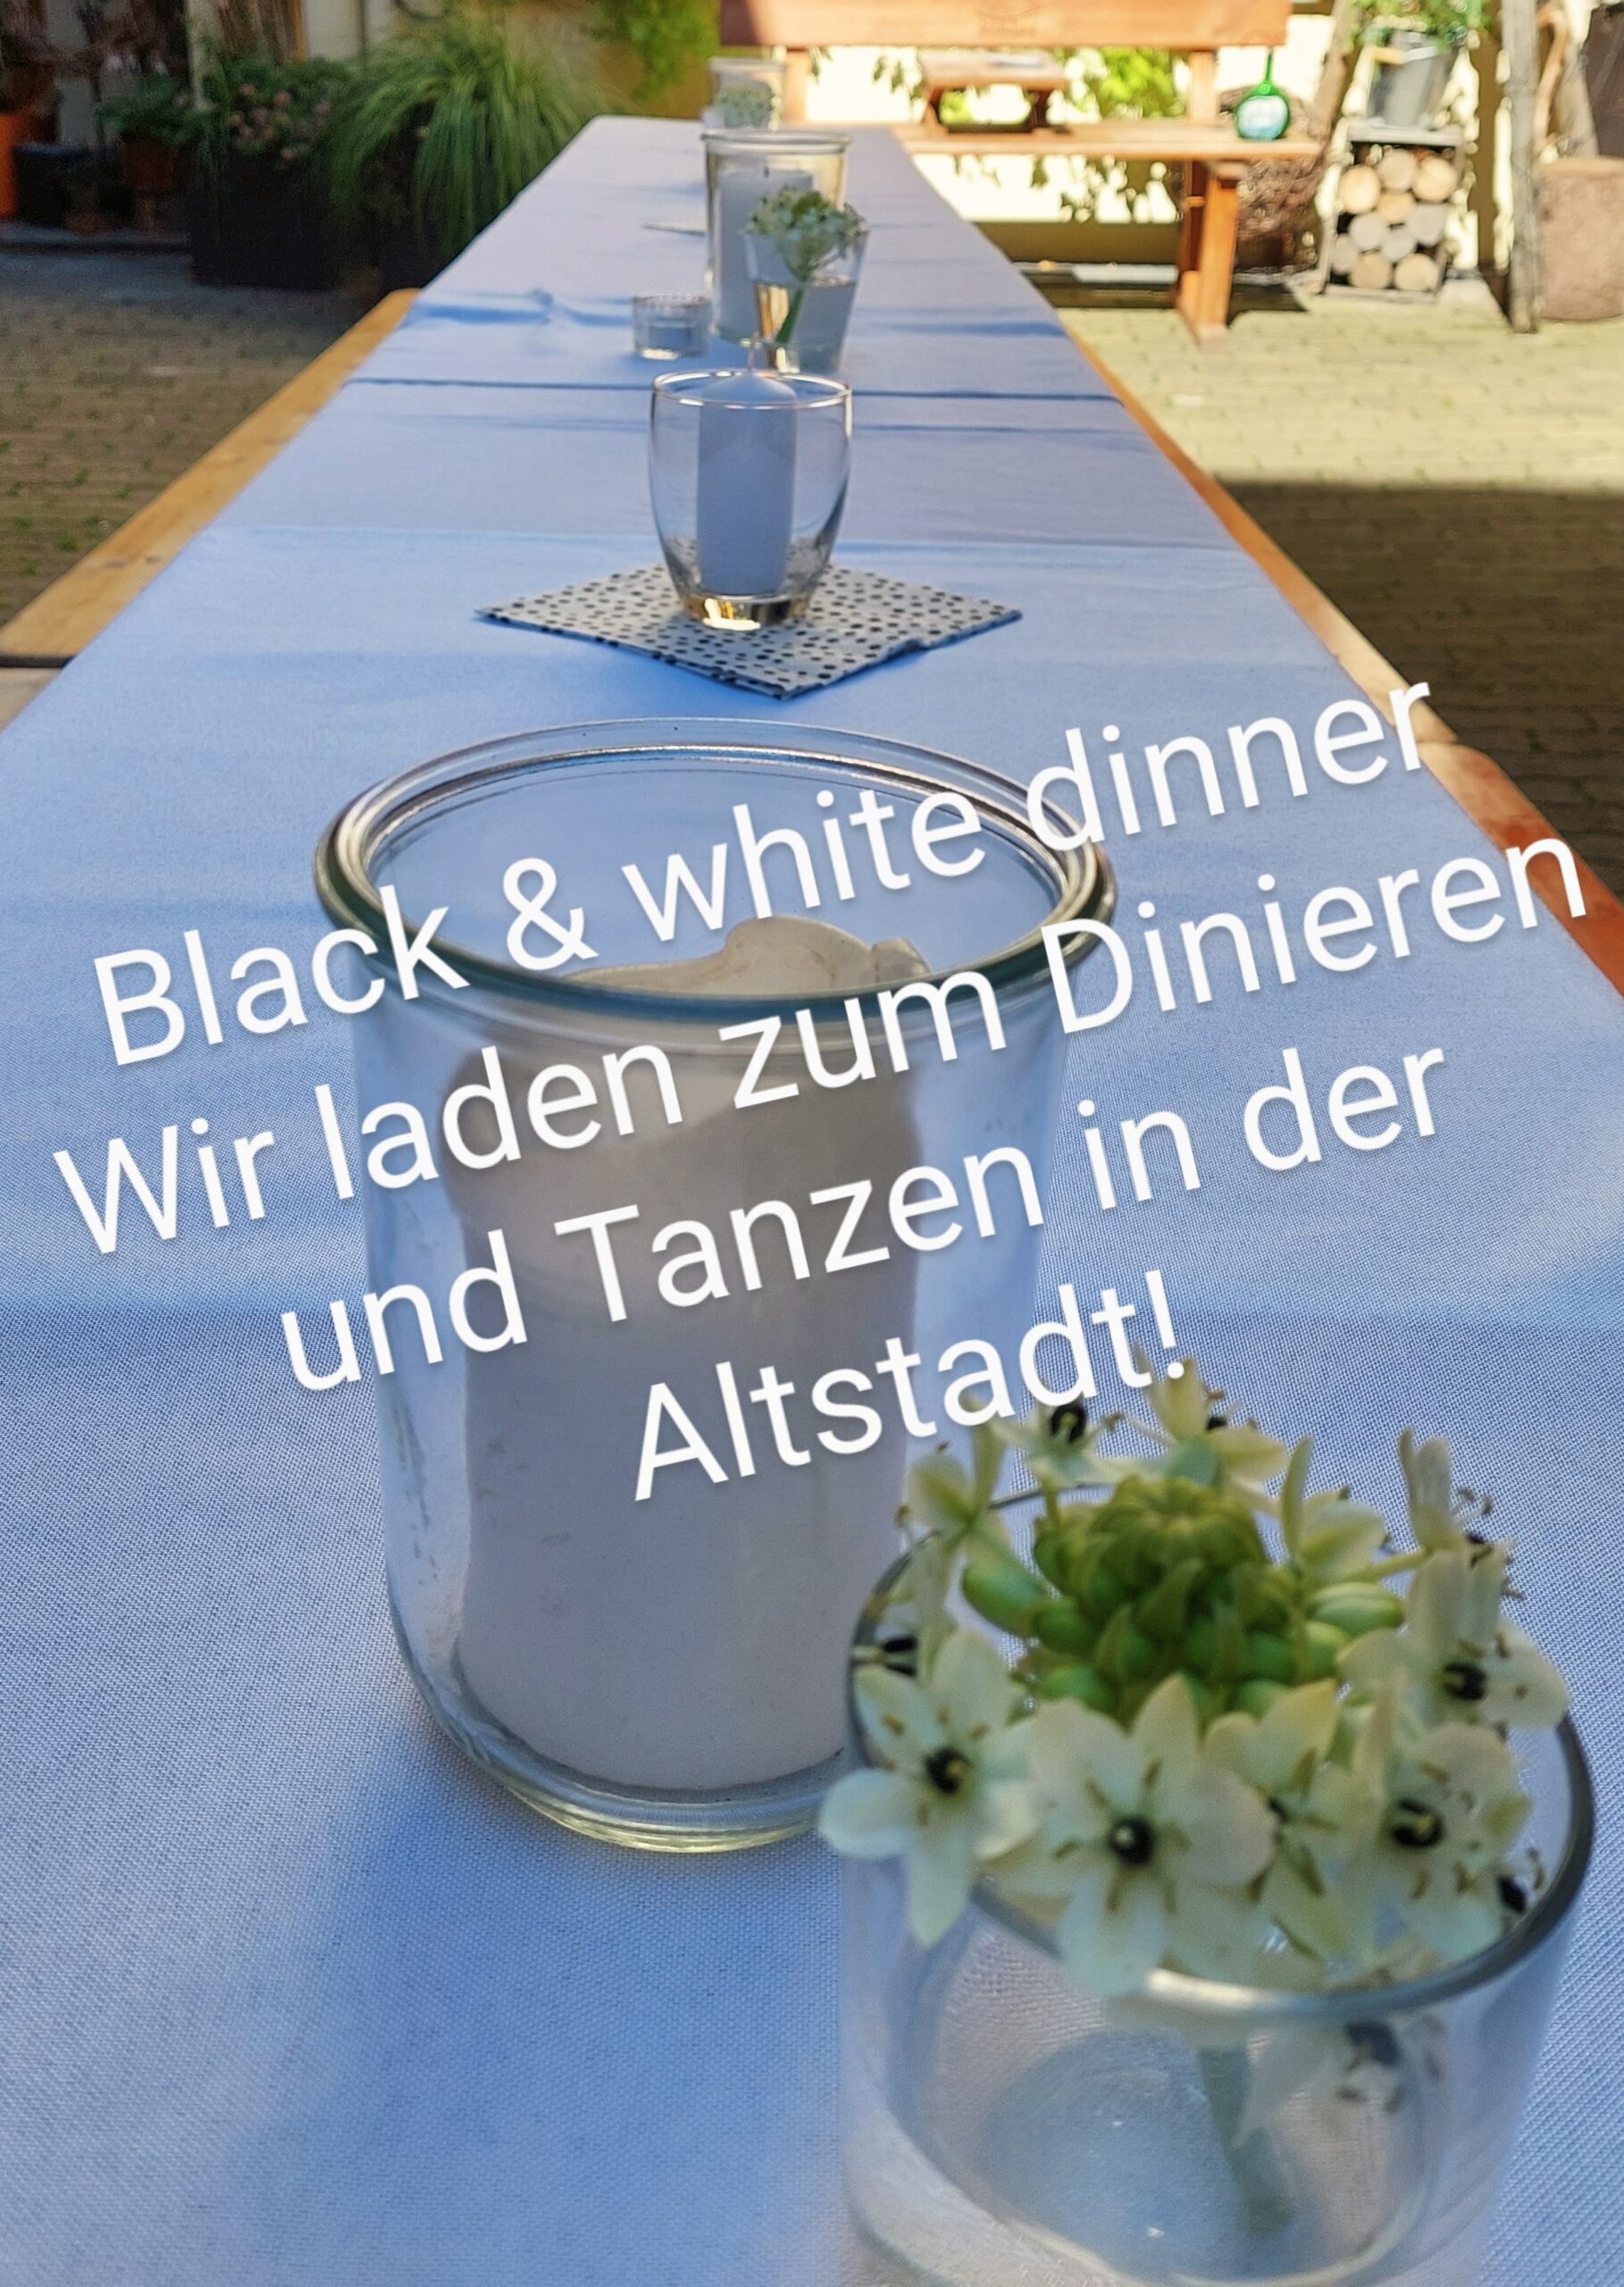 Prichsenstadt deckt auf zum Black & White Dinner